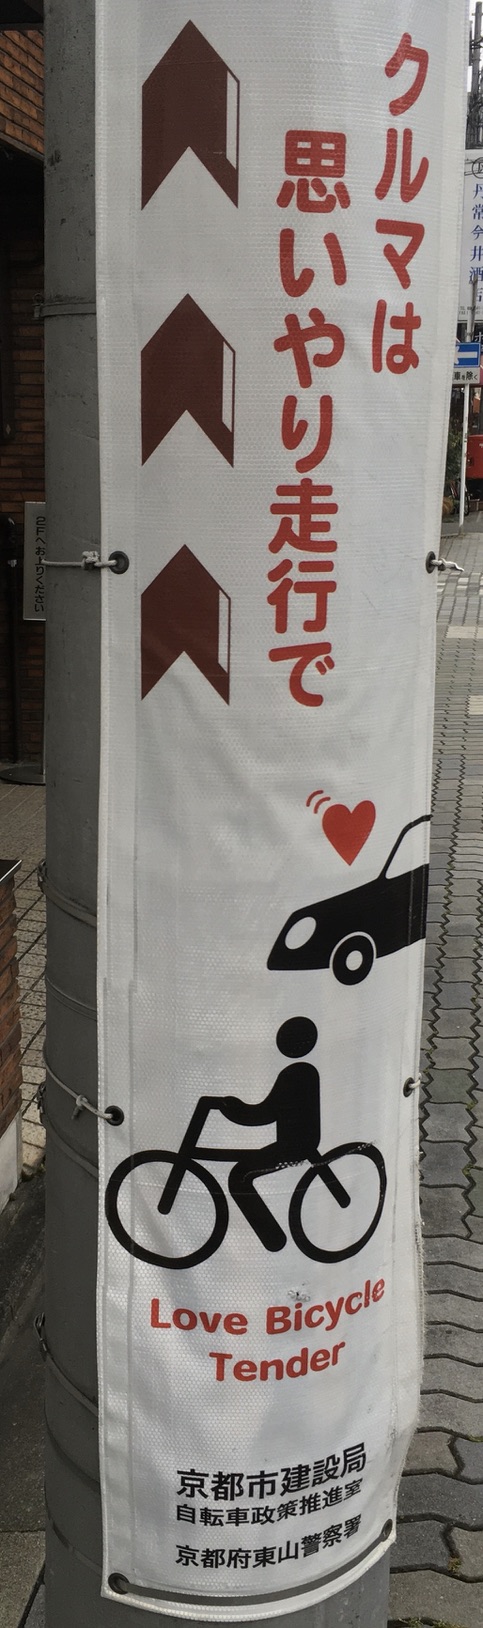 日本語は「クルマは思いやり走行で」、英語は「Love Bicycle Tender」。